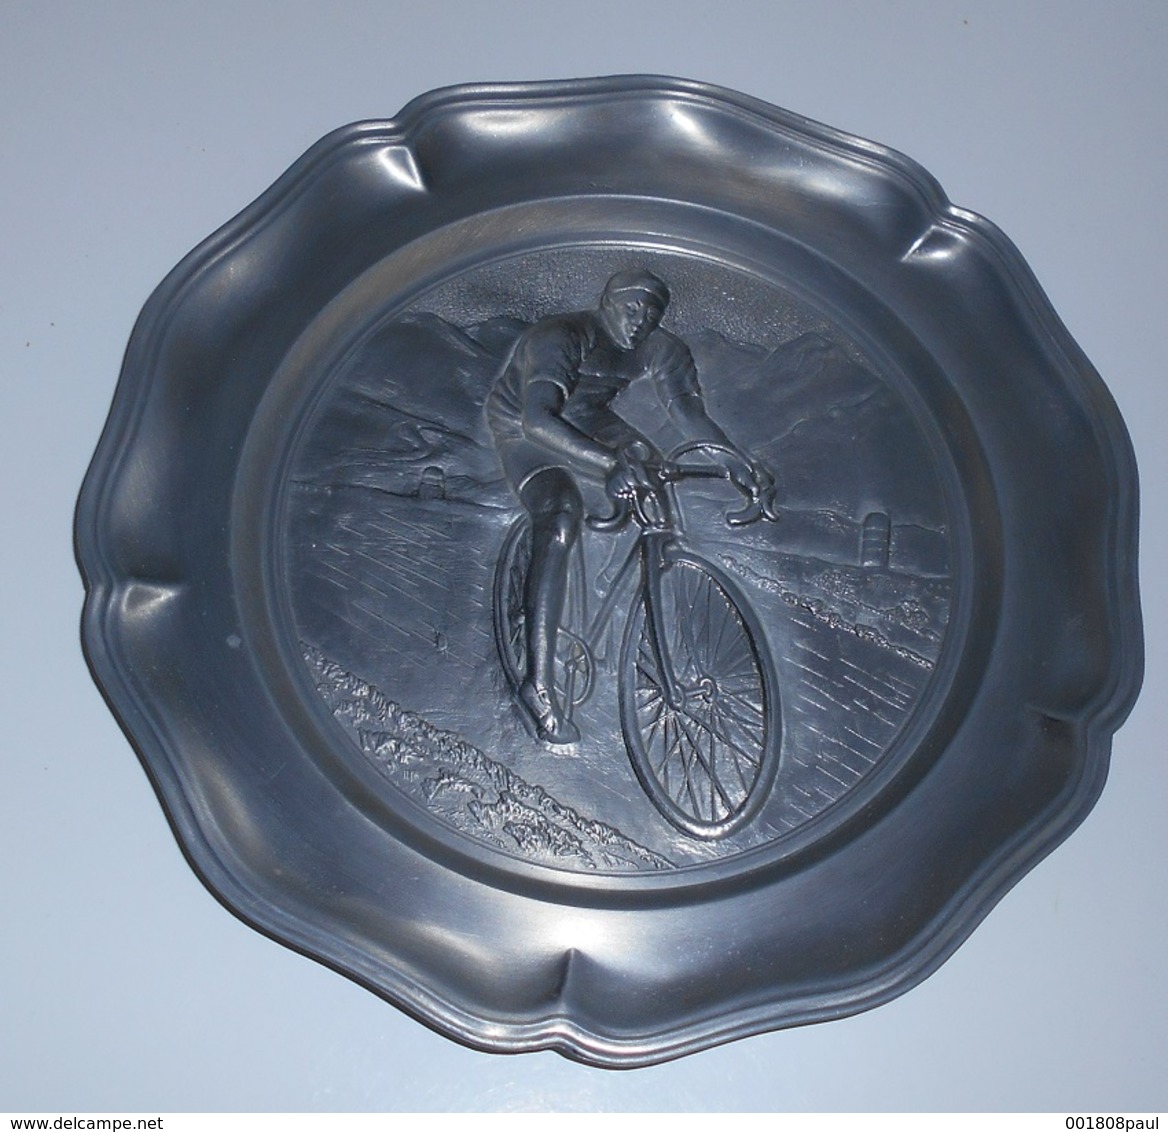 Assiette Décorative En Etains ? : Coureur Cycliste En Relief :: Sports - Vélos - Bicyclettes - Courses - Profil - Etains